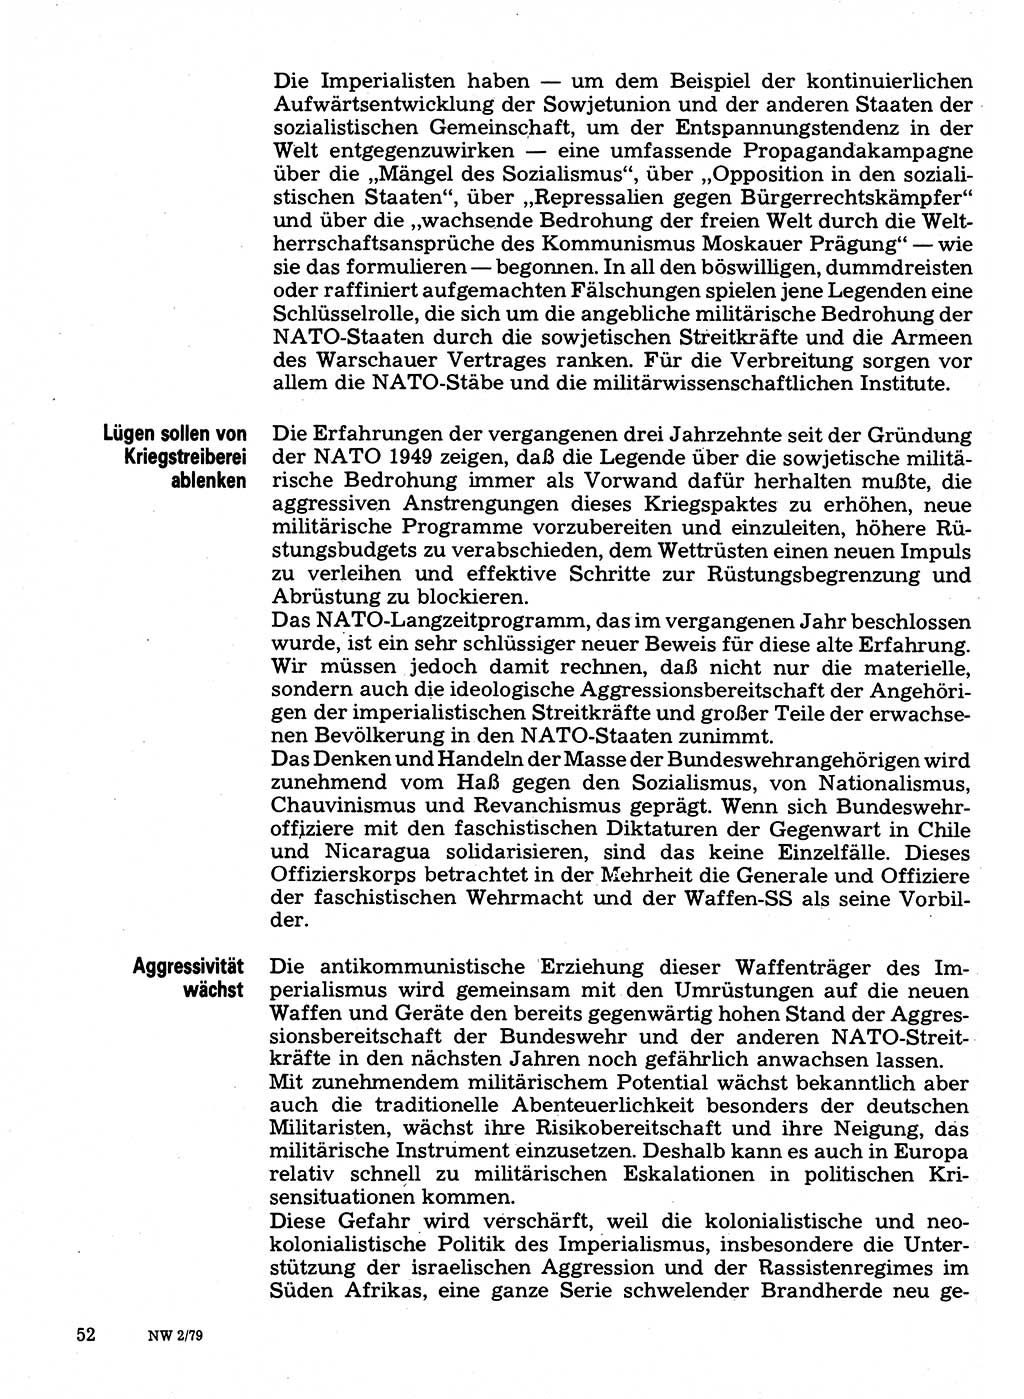 Neuer Weg (NW), Organ des Zentralkomitees (ZK) der SED (Sozialistische Einheitspartei Deutschlands) für Fragen des Parteilebens, 34. Jahrgang [Deutsche Demokratische Republik (DDR)] 1979, Seite 52 (NW ZK SED DDR 1979, S. 52)